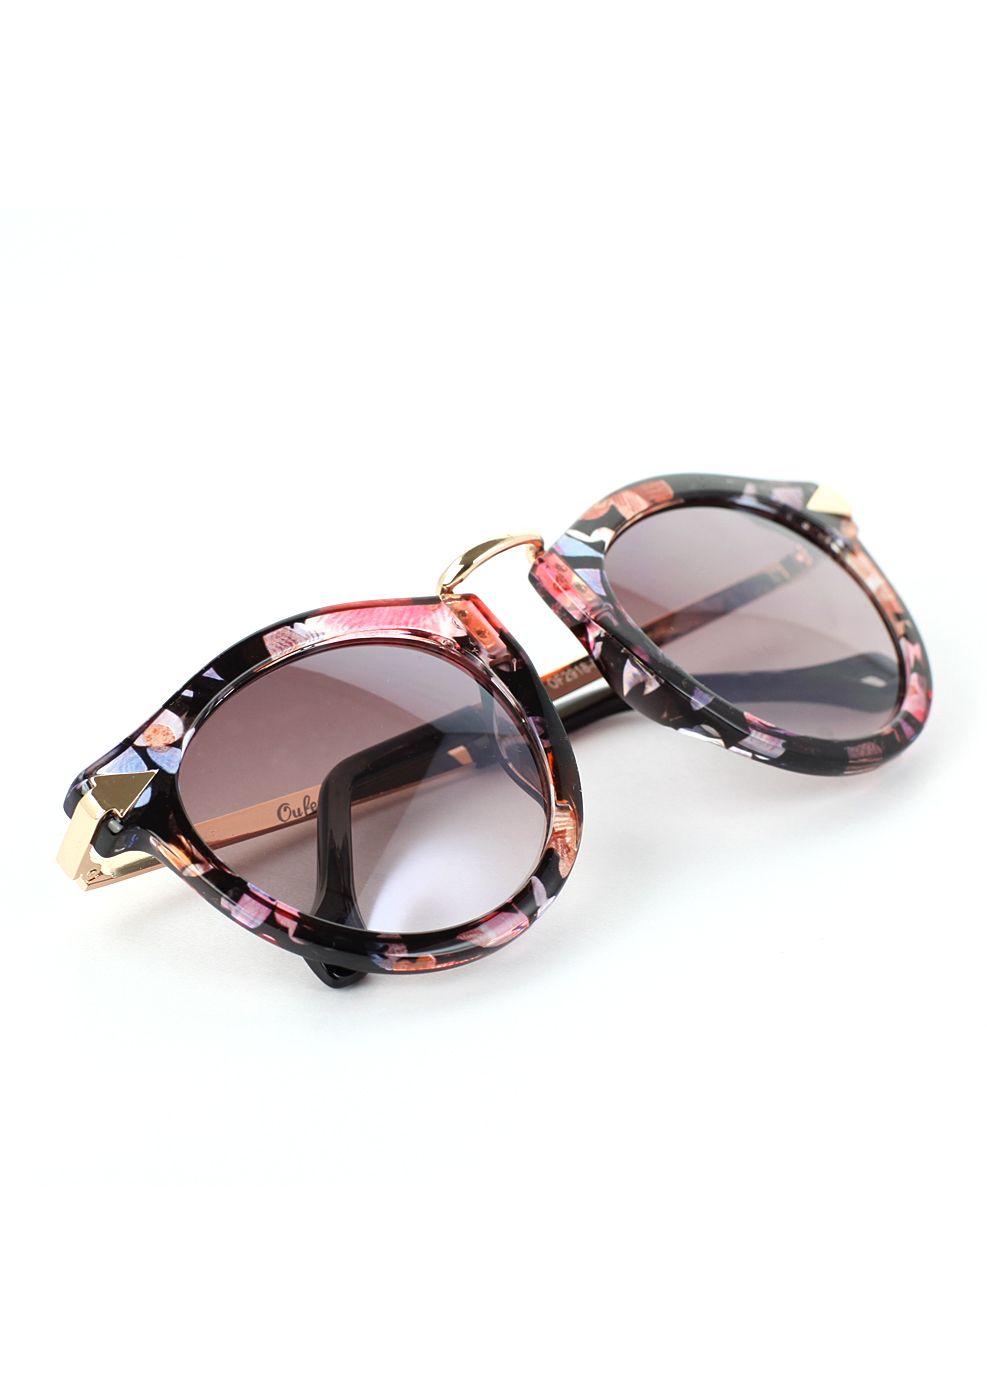 Mehrfarbige Sonnenbrille mit Metalldesign.